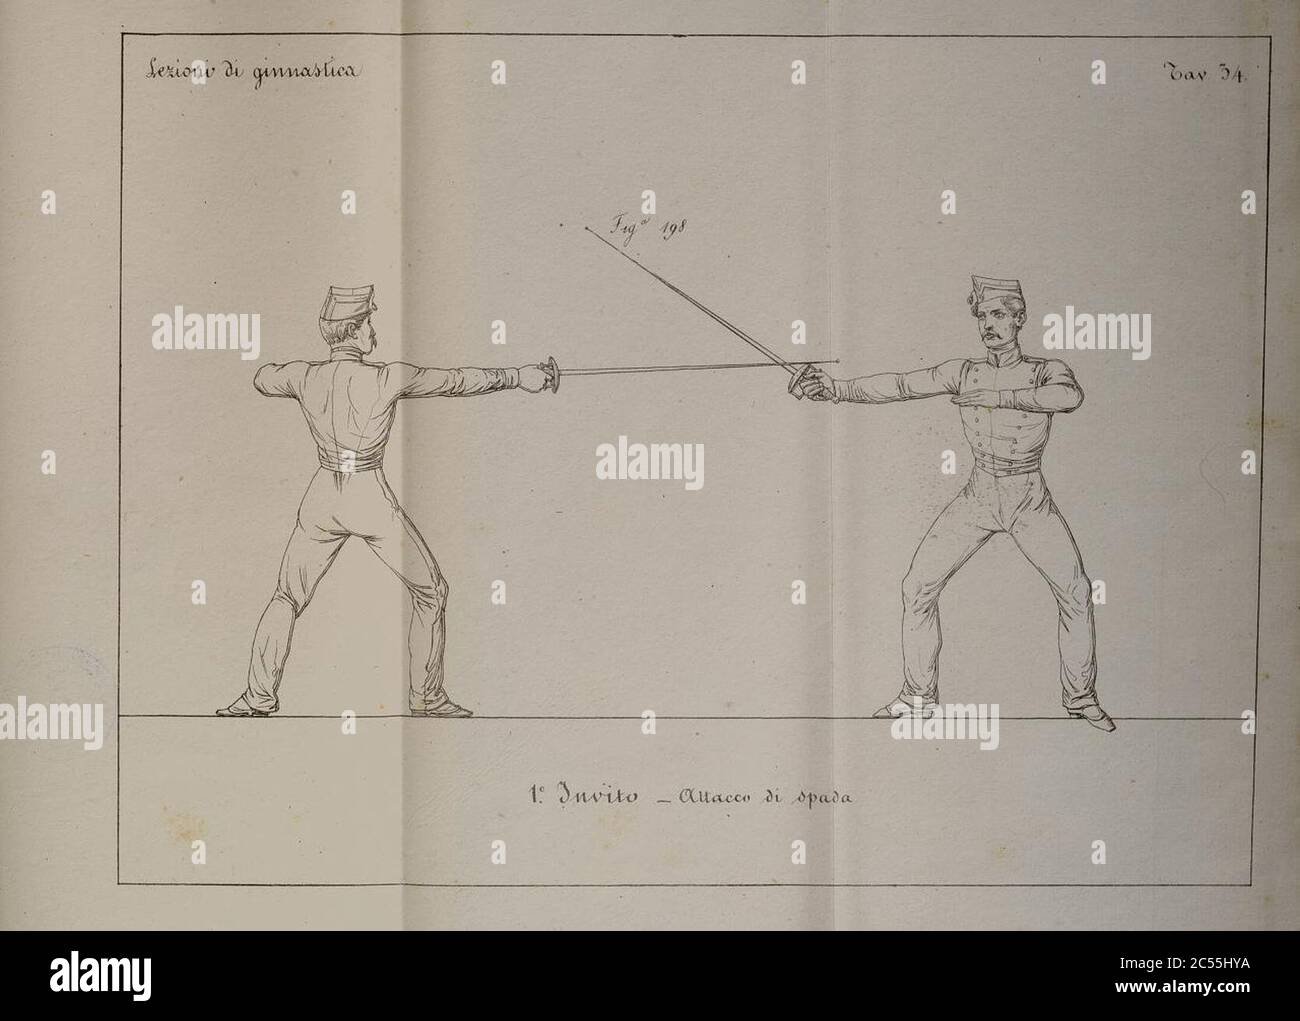 Istituzione di arte ginnastica per le truppe di fanteria di S. M. Siciliana. Niccolò Abbondati. Stock Photo